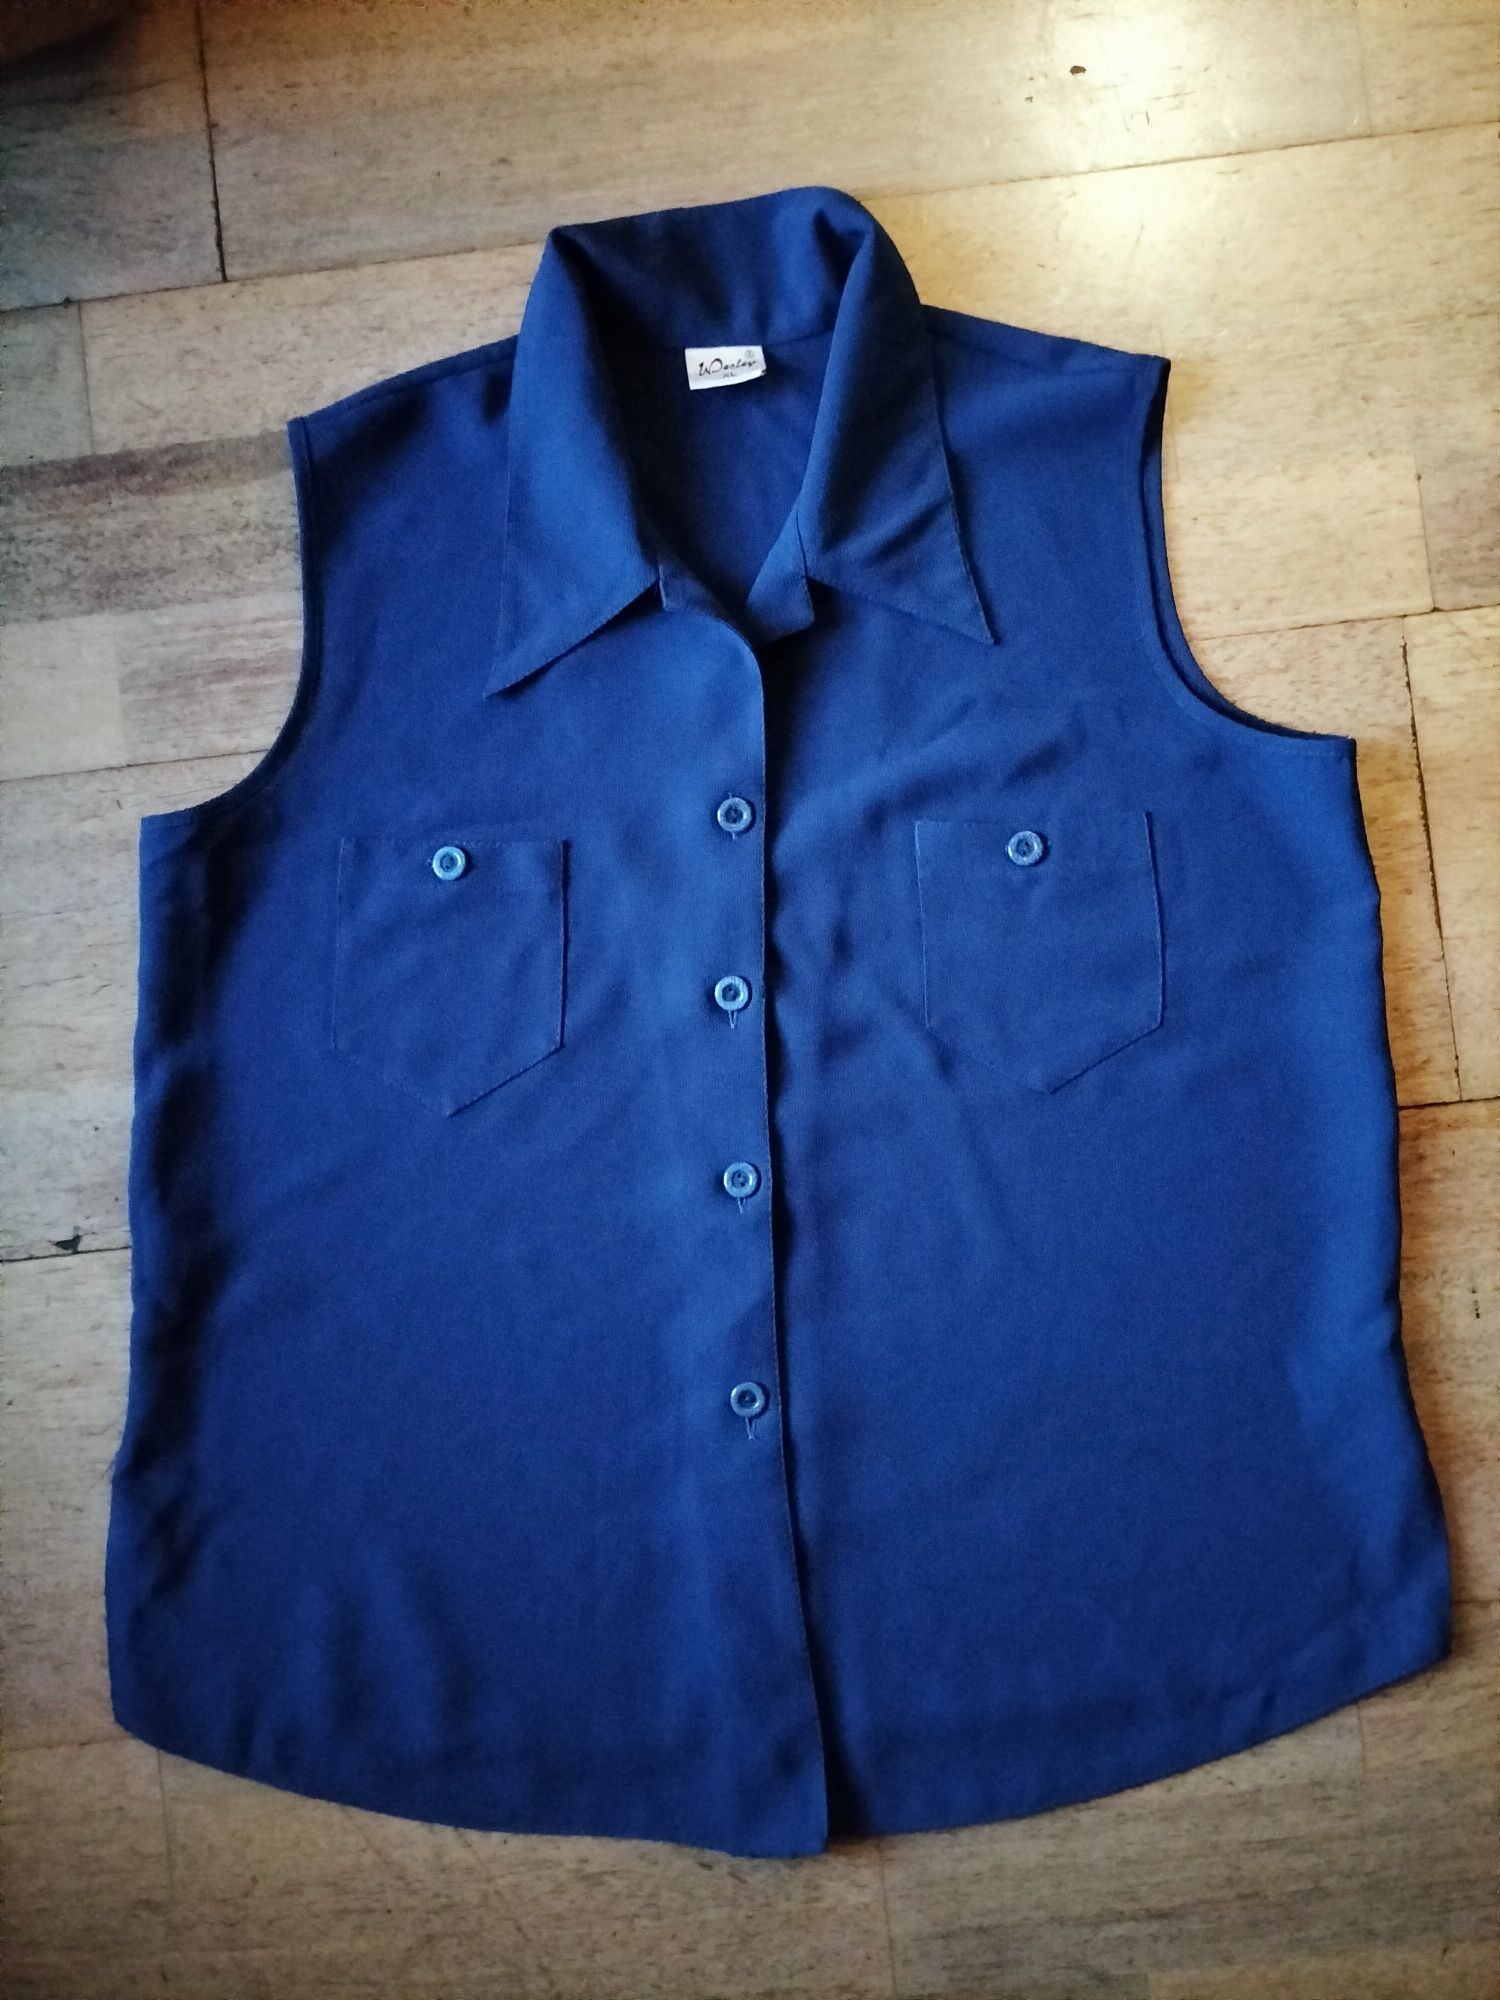 Bluzka damska top koszula cobalt granatowa bez rękawów z kołnierzem XL